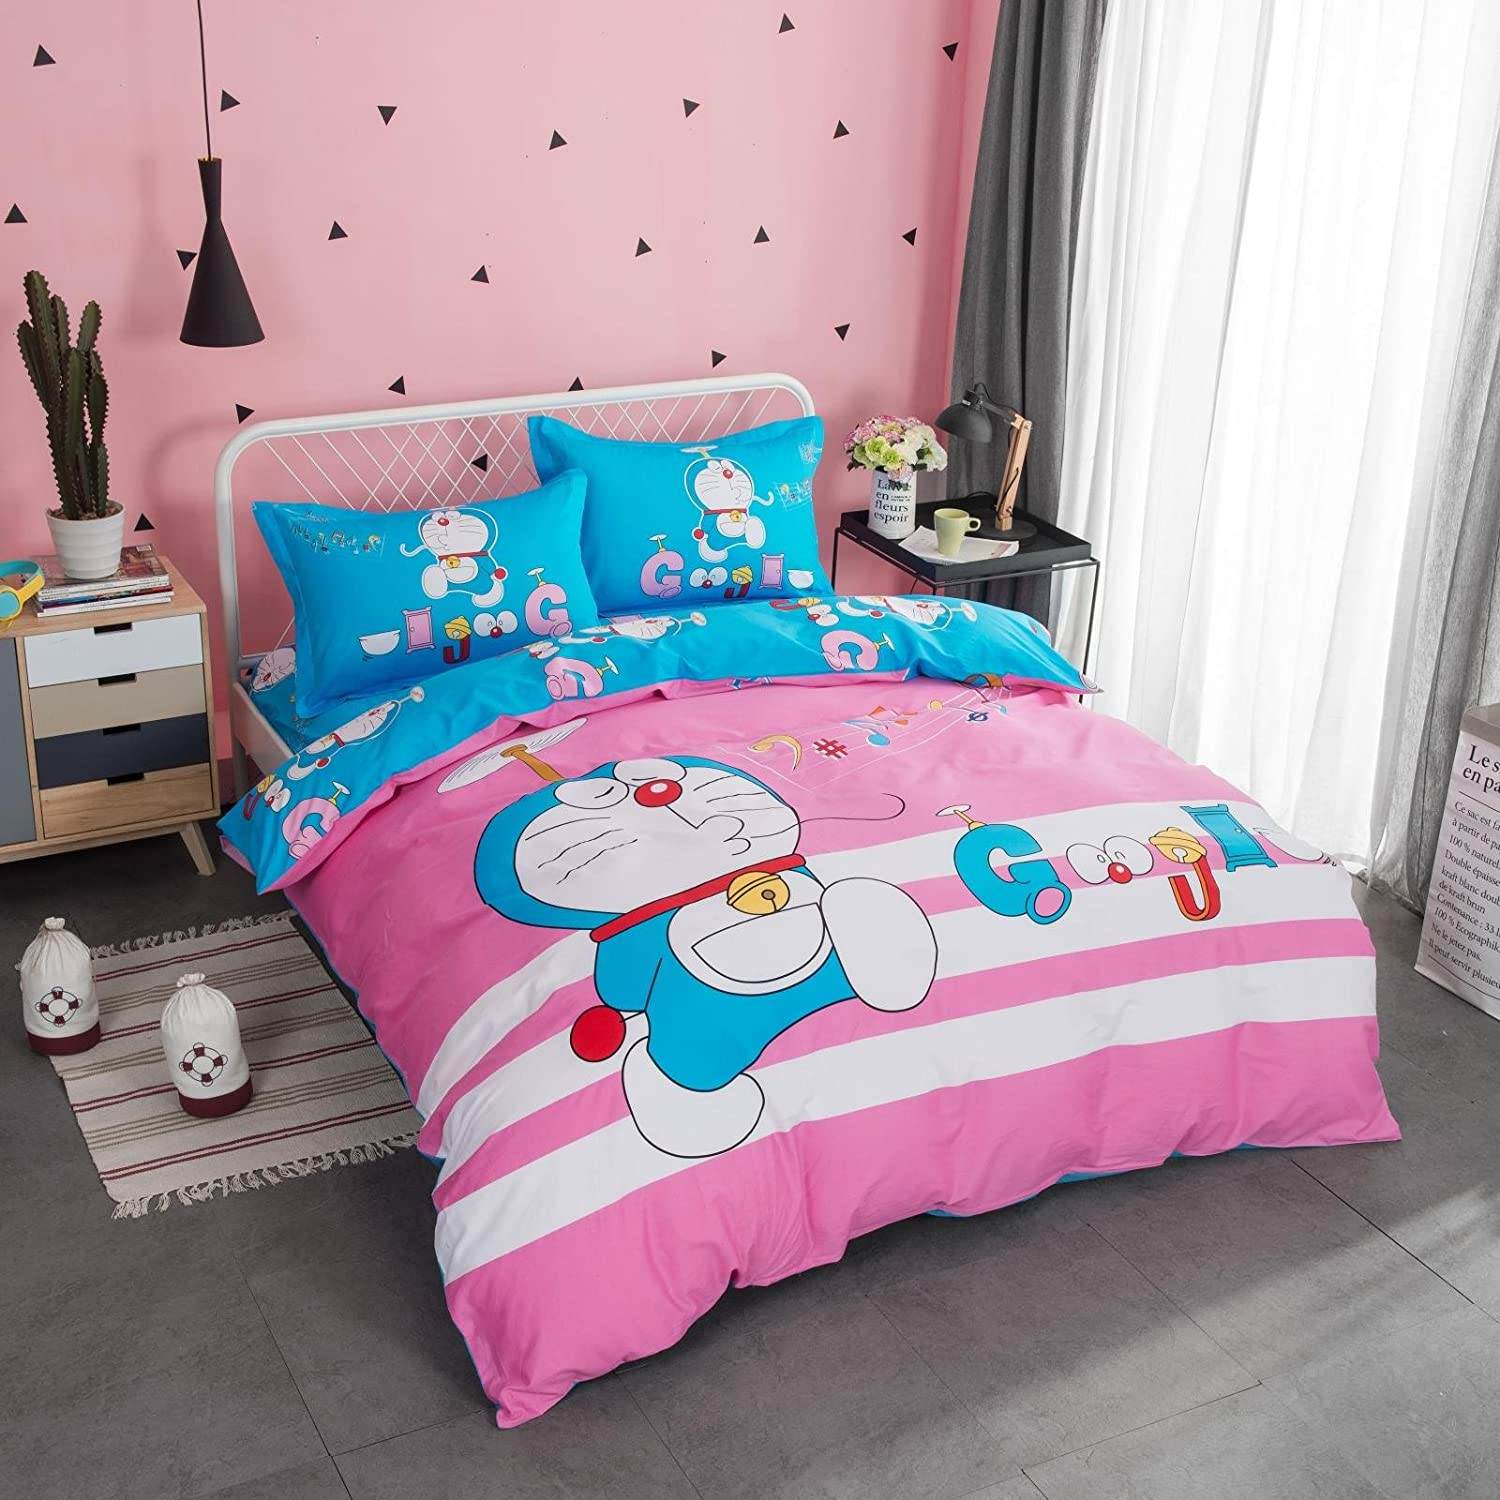 Trang trí phòng ngủ doremon màu hồng bằng bộ ga giường và màu sơn tường